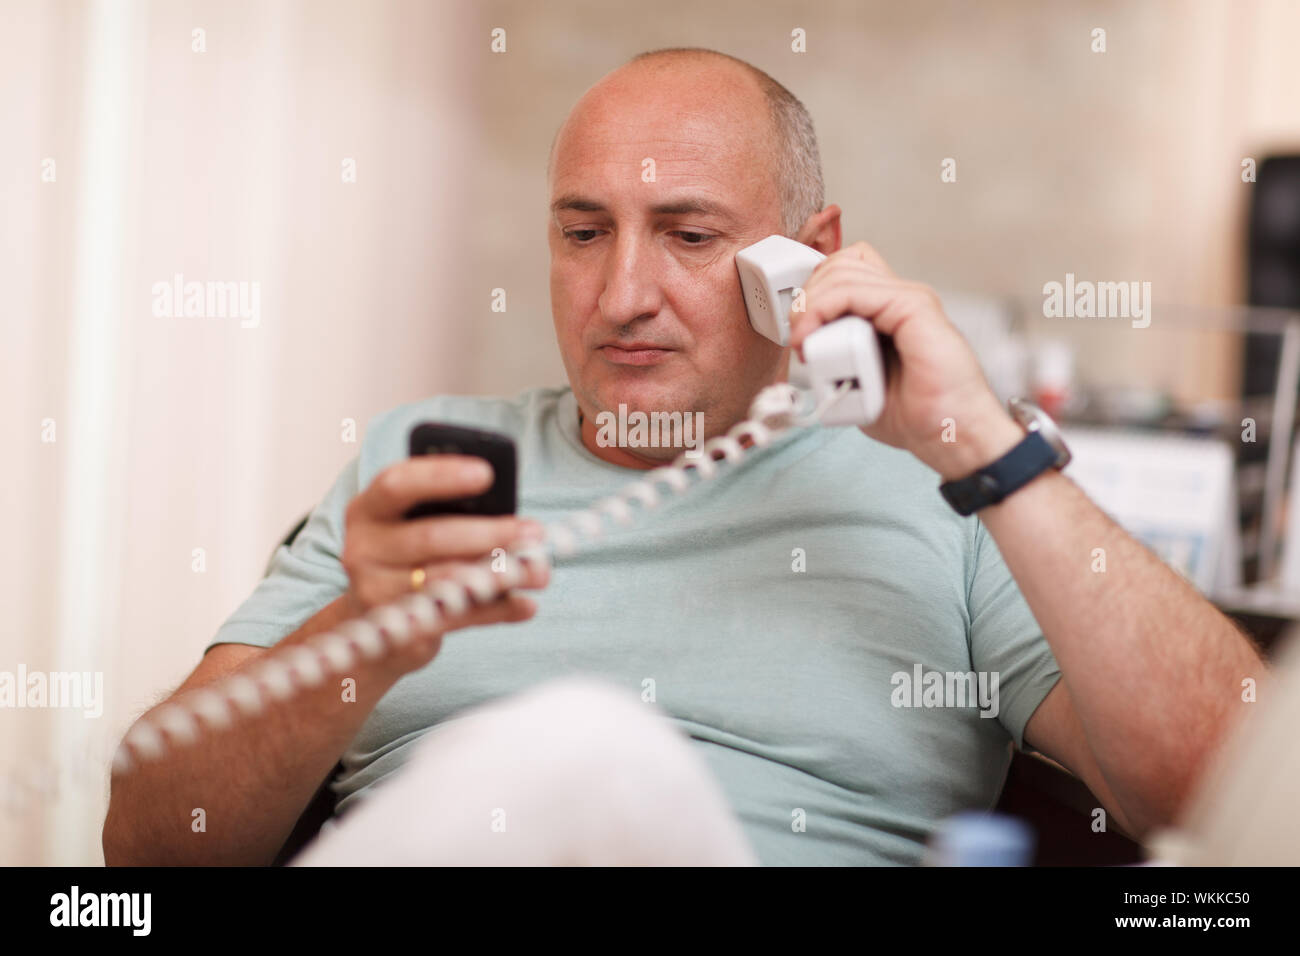 Русское видео с мужем по телефону. Мужчина звонит по телефону. Мужчина с телефонной трубкой. Мужчина с телефонной трубкой в руке. Мужик с телефоном.